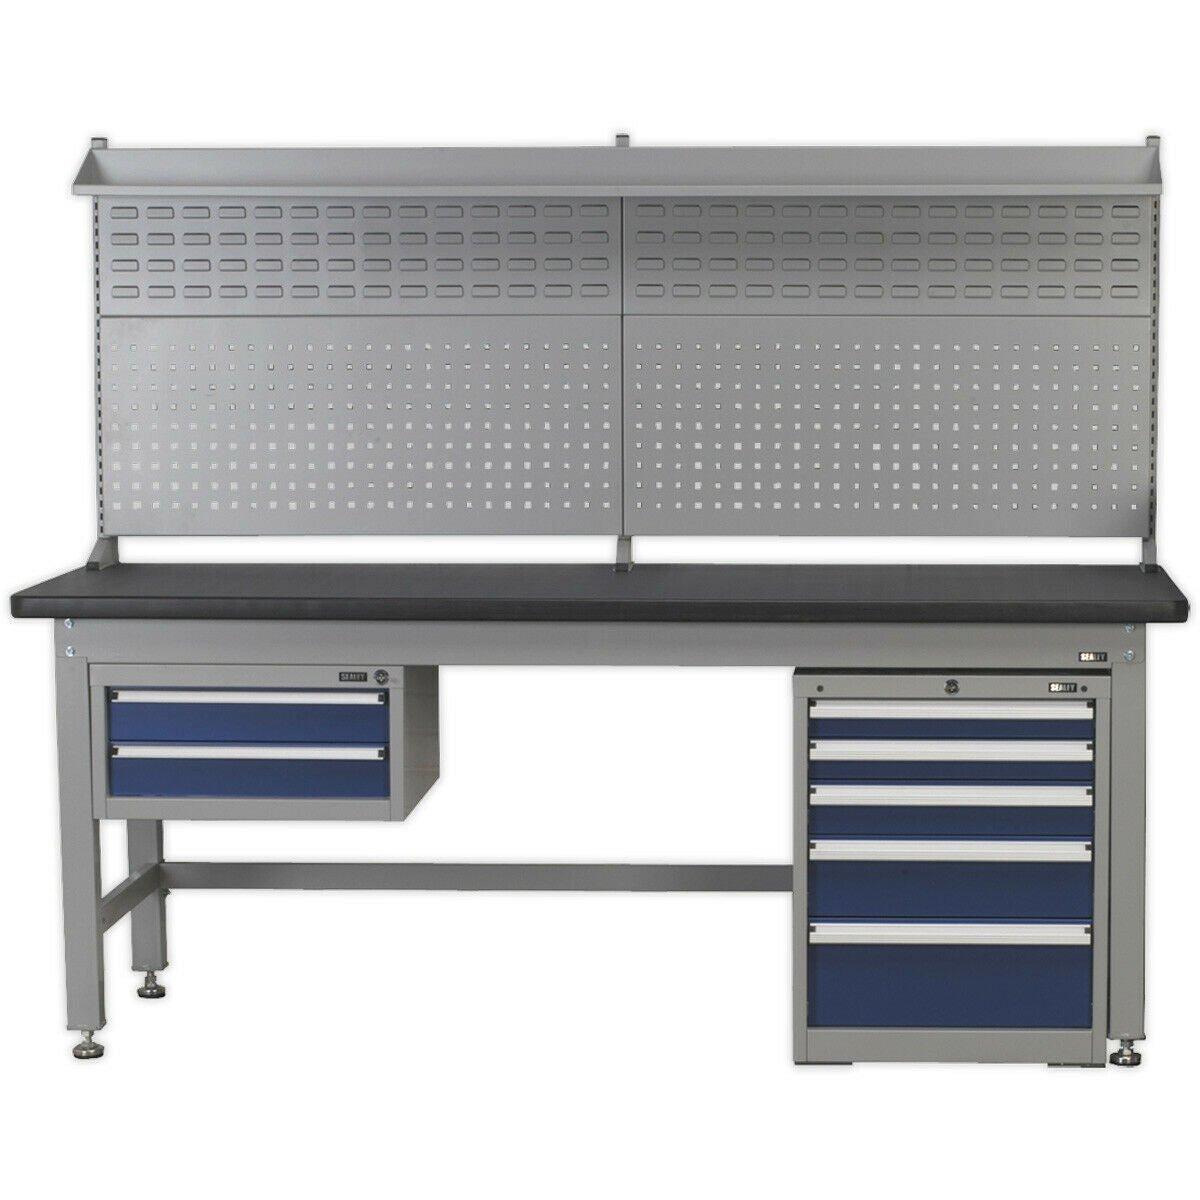 2.1m Complete Industrial Workstation & Cabinet Set - Back Panel Drawers Storage